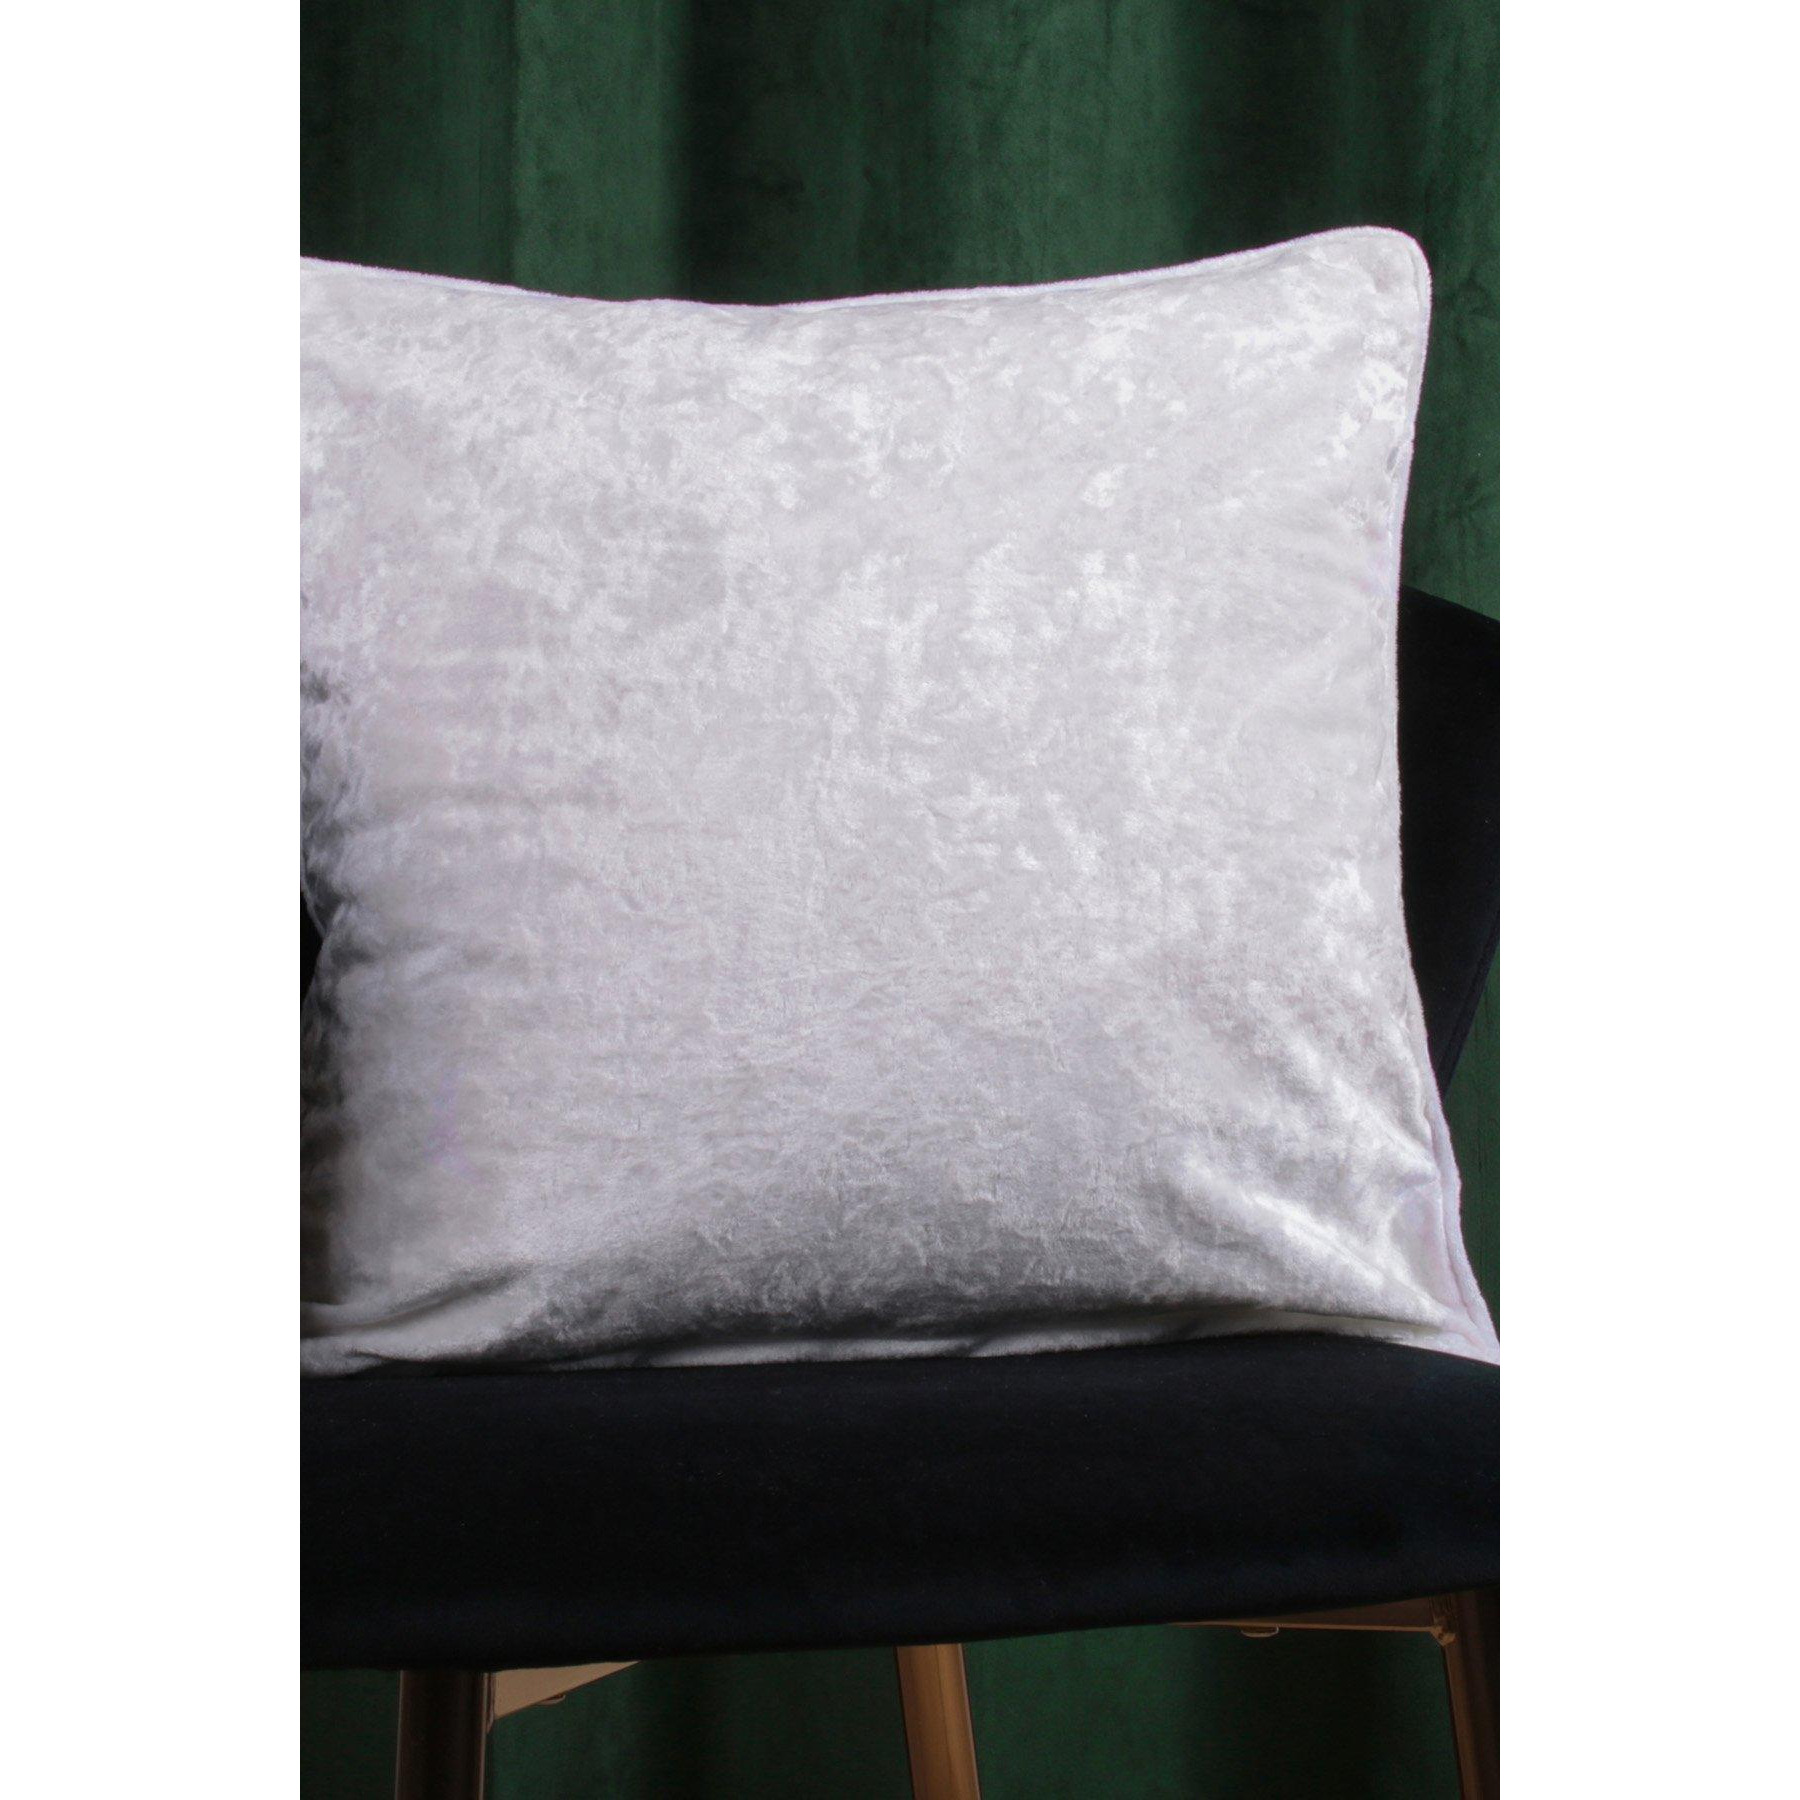 'Crushed Velvet' Textured Velvet Filled Cushion - image 1